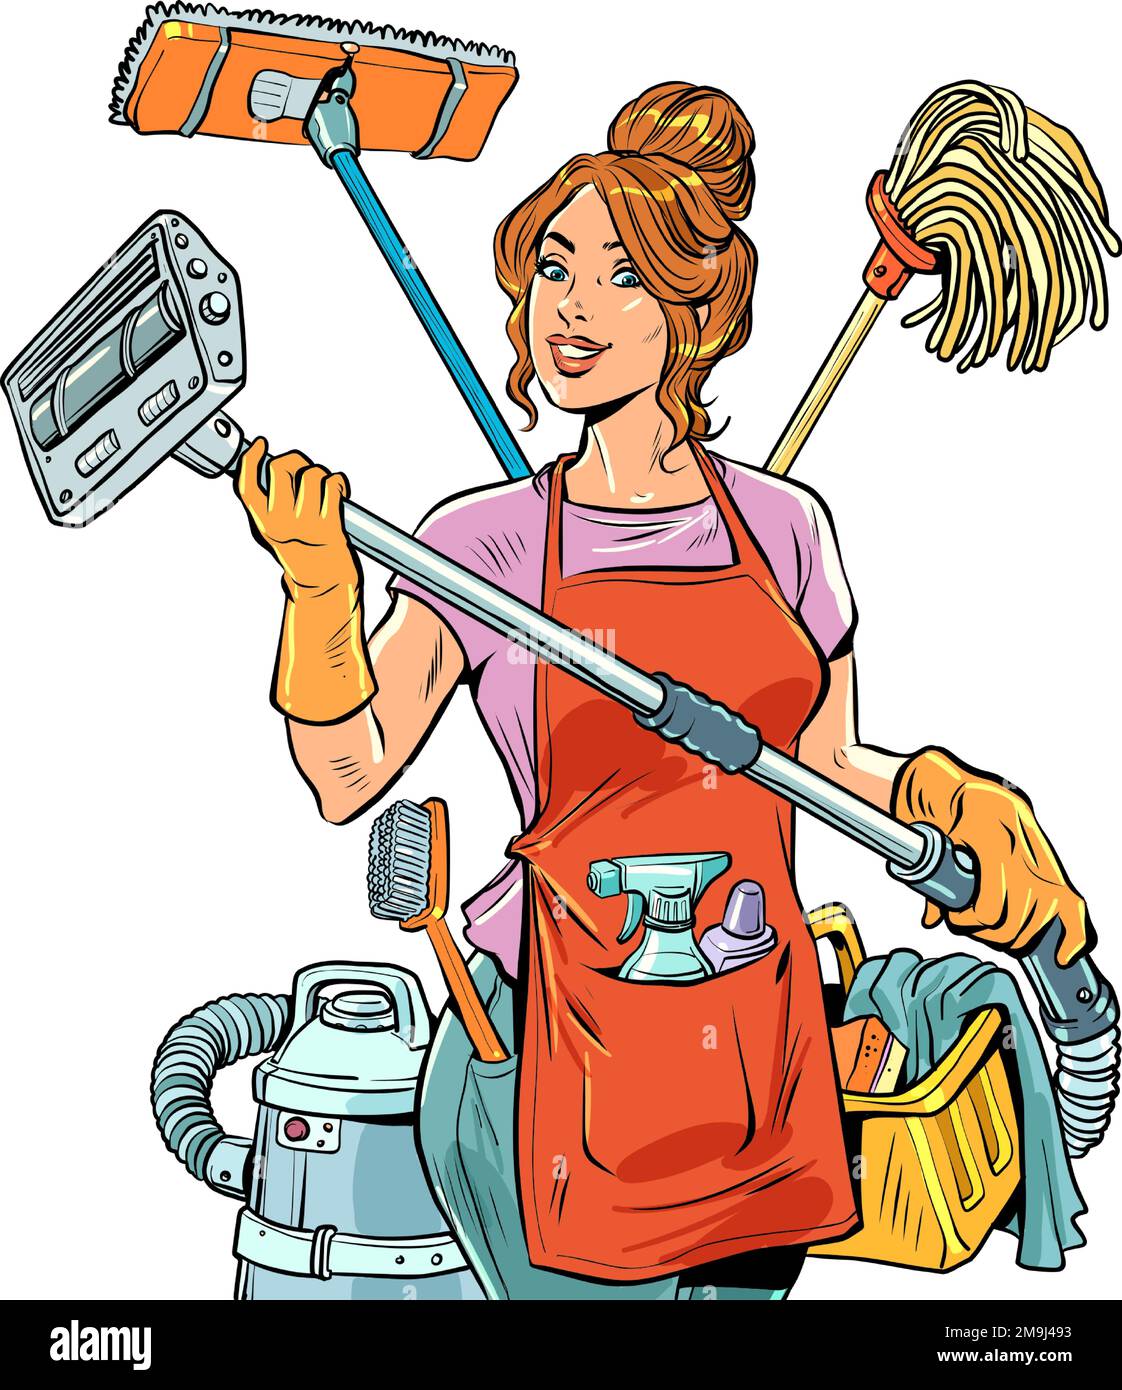 Reinigungsservice Eine wunderschöne Hausfrau organisiert die Reinigung und das Leben in ihrem Haus für die ganze Familie und sich selbst. Multitasking-Hausarbeit für Ehefrauen Stock Vektor